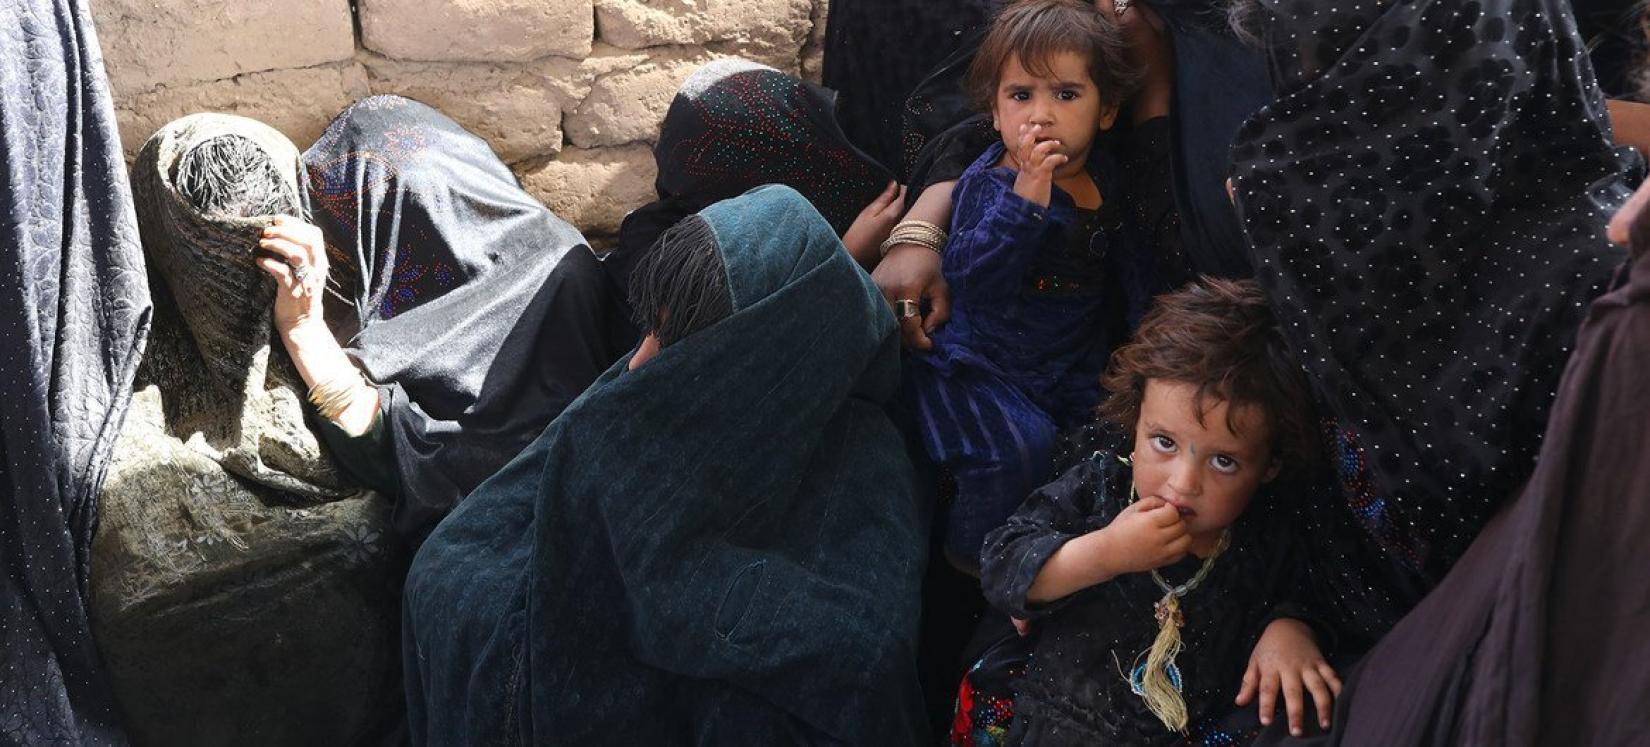 Mães e crianças em uma clínica móvel de nutrição apoiada pelo Programa Mundial de Alimentos em Herat, no Afeganistão.